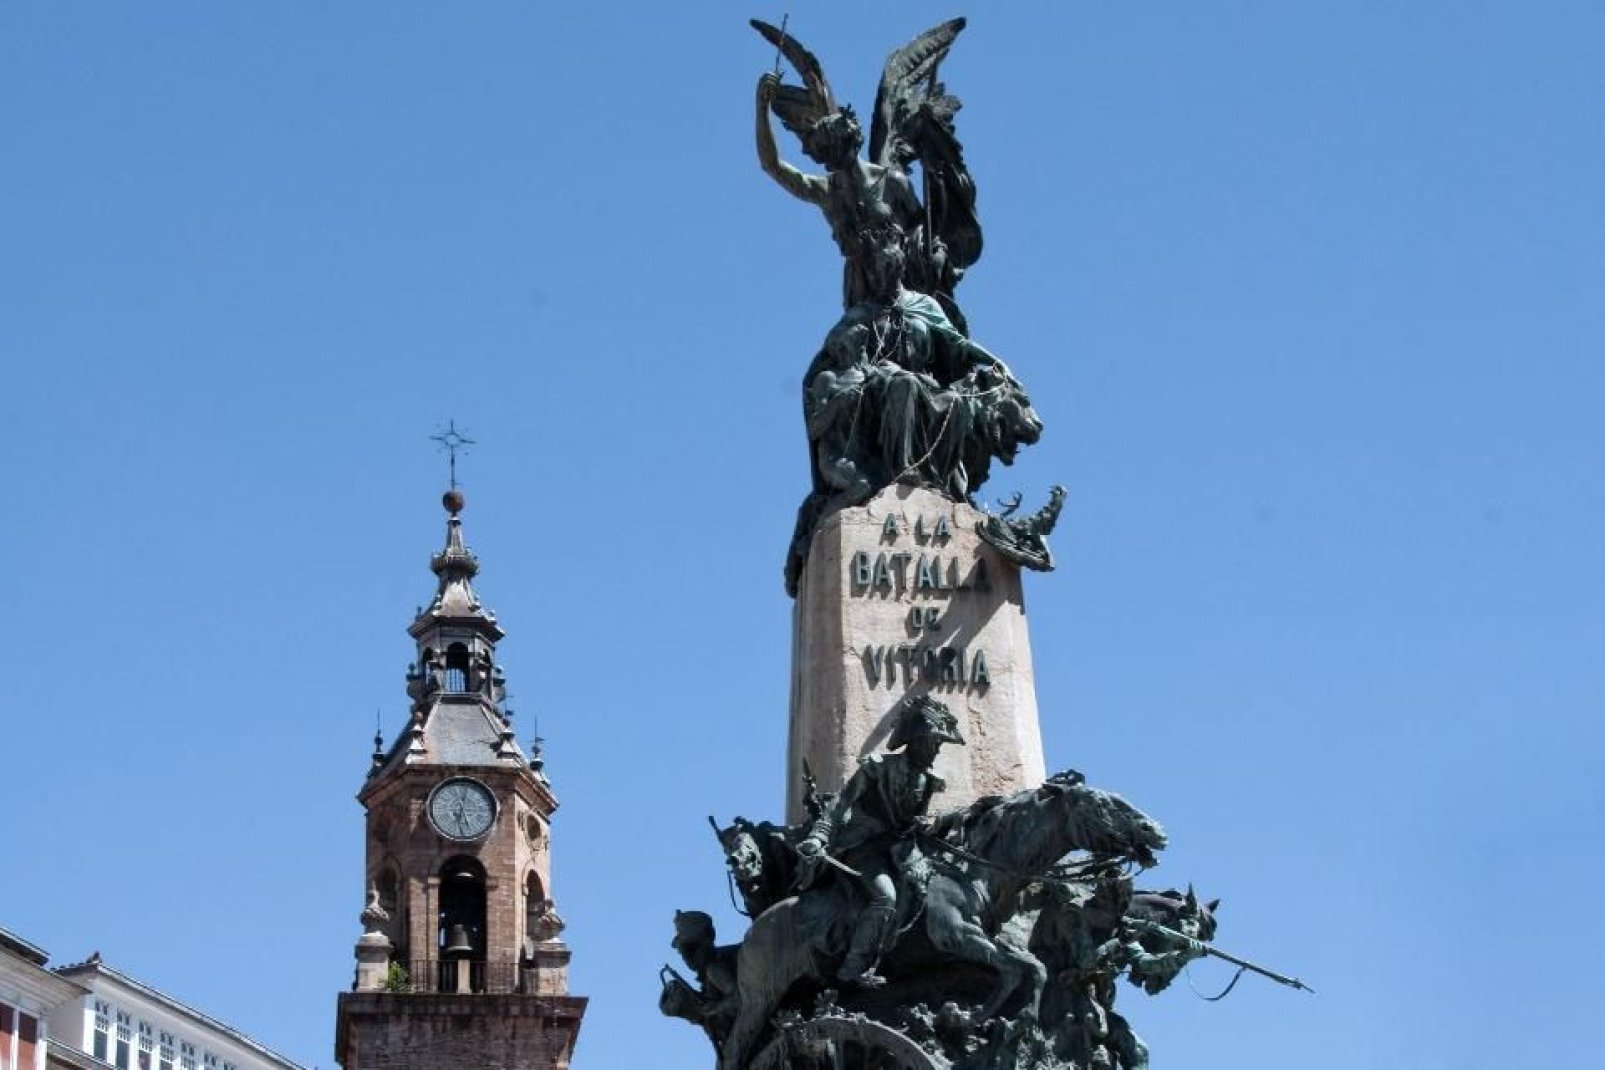 Este monumento situado en el centro de la plaza de la Virgen Blanca conmemora la batalla de Vitoria durante la Guerra de la Independencia que enfrentó a franceses y españoles de 1808 a 1814.